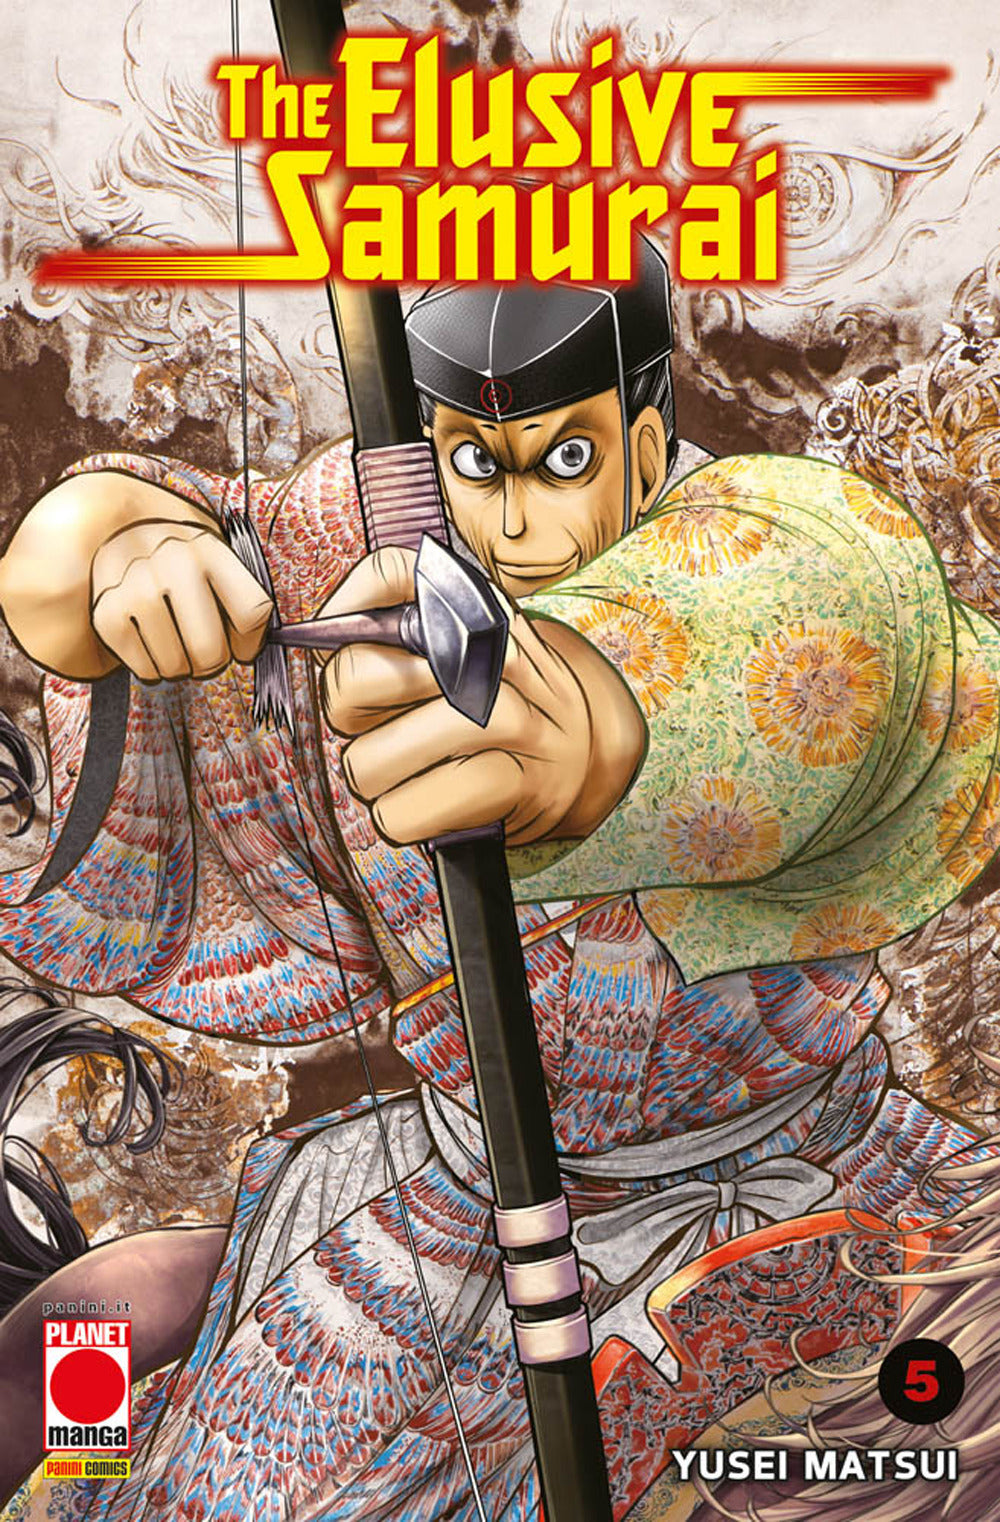 The elusive samurai. Vol. 5